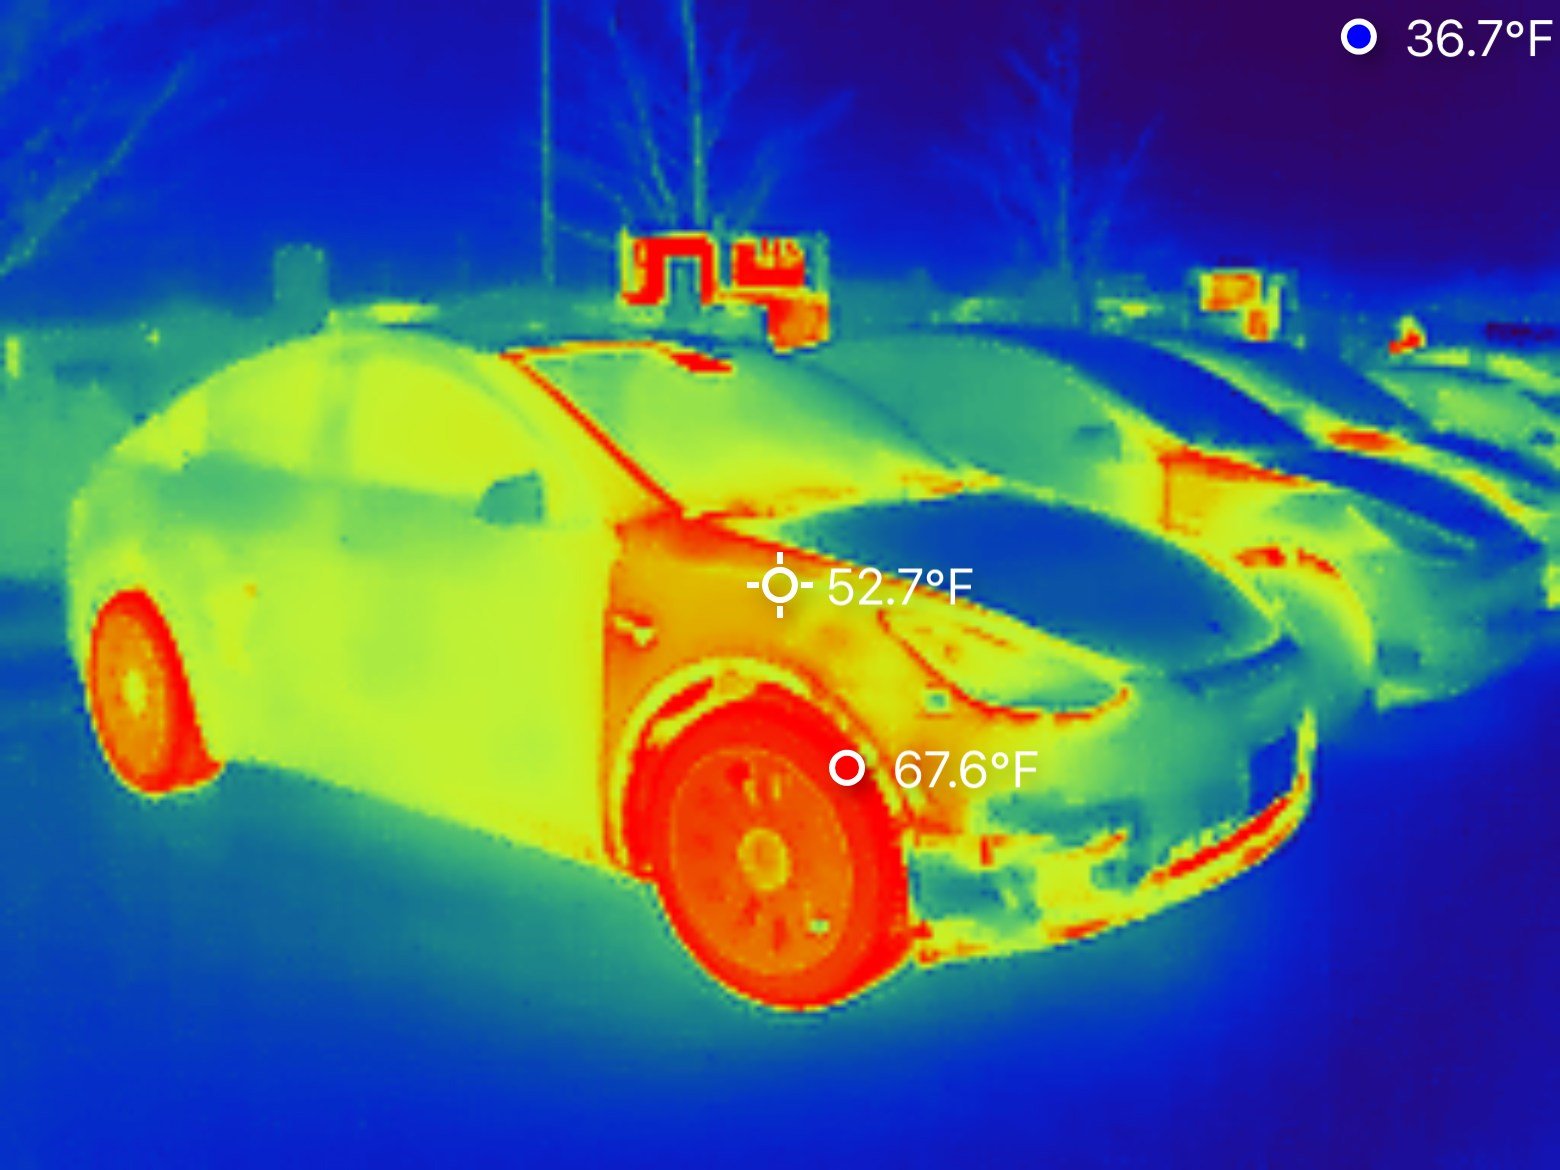 Model Y fender is hot, thermal image